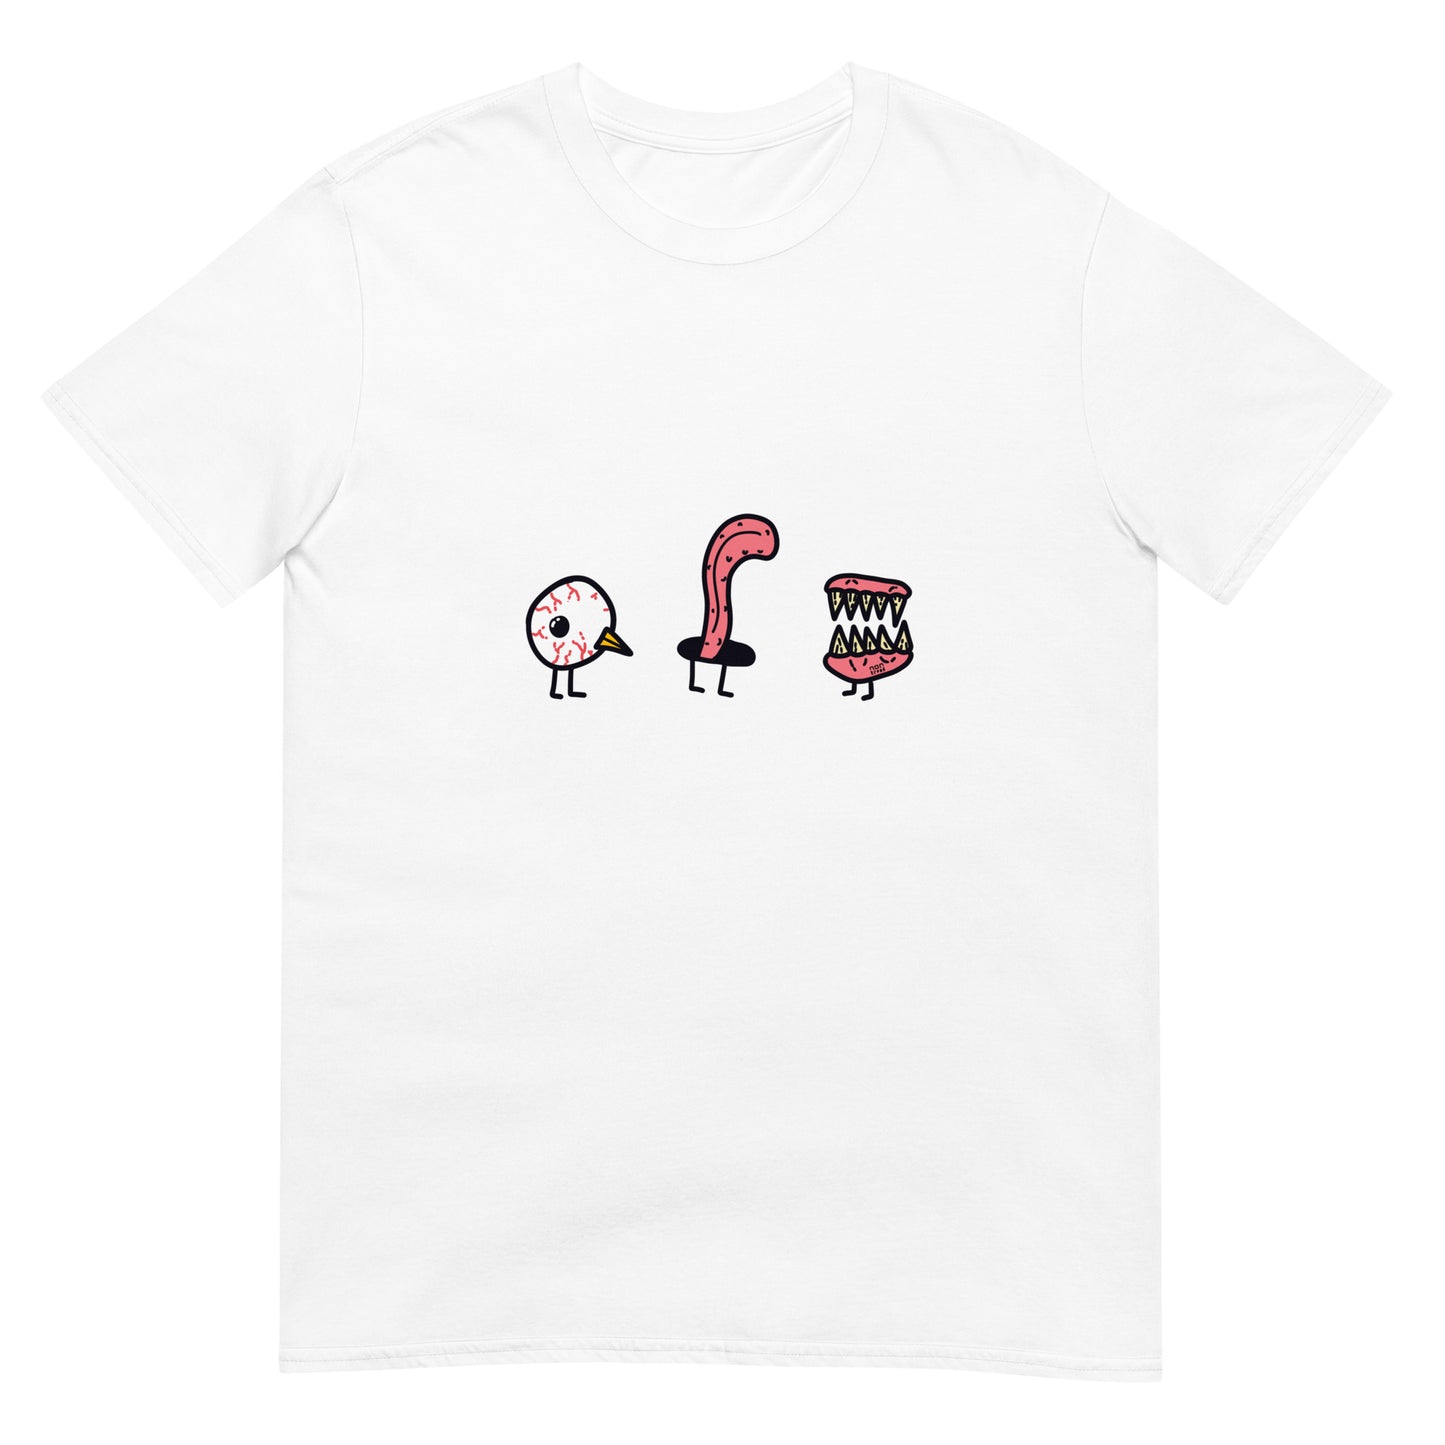 The Three Little Birds Face T-Shirt